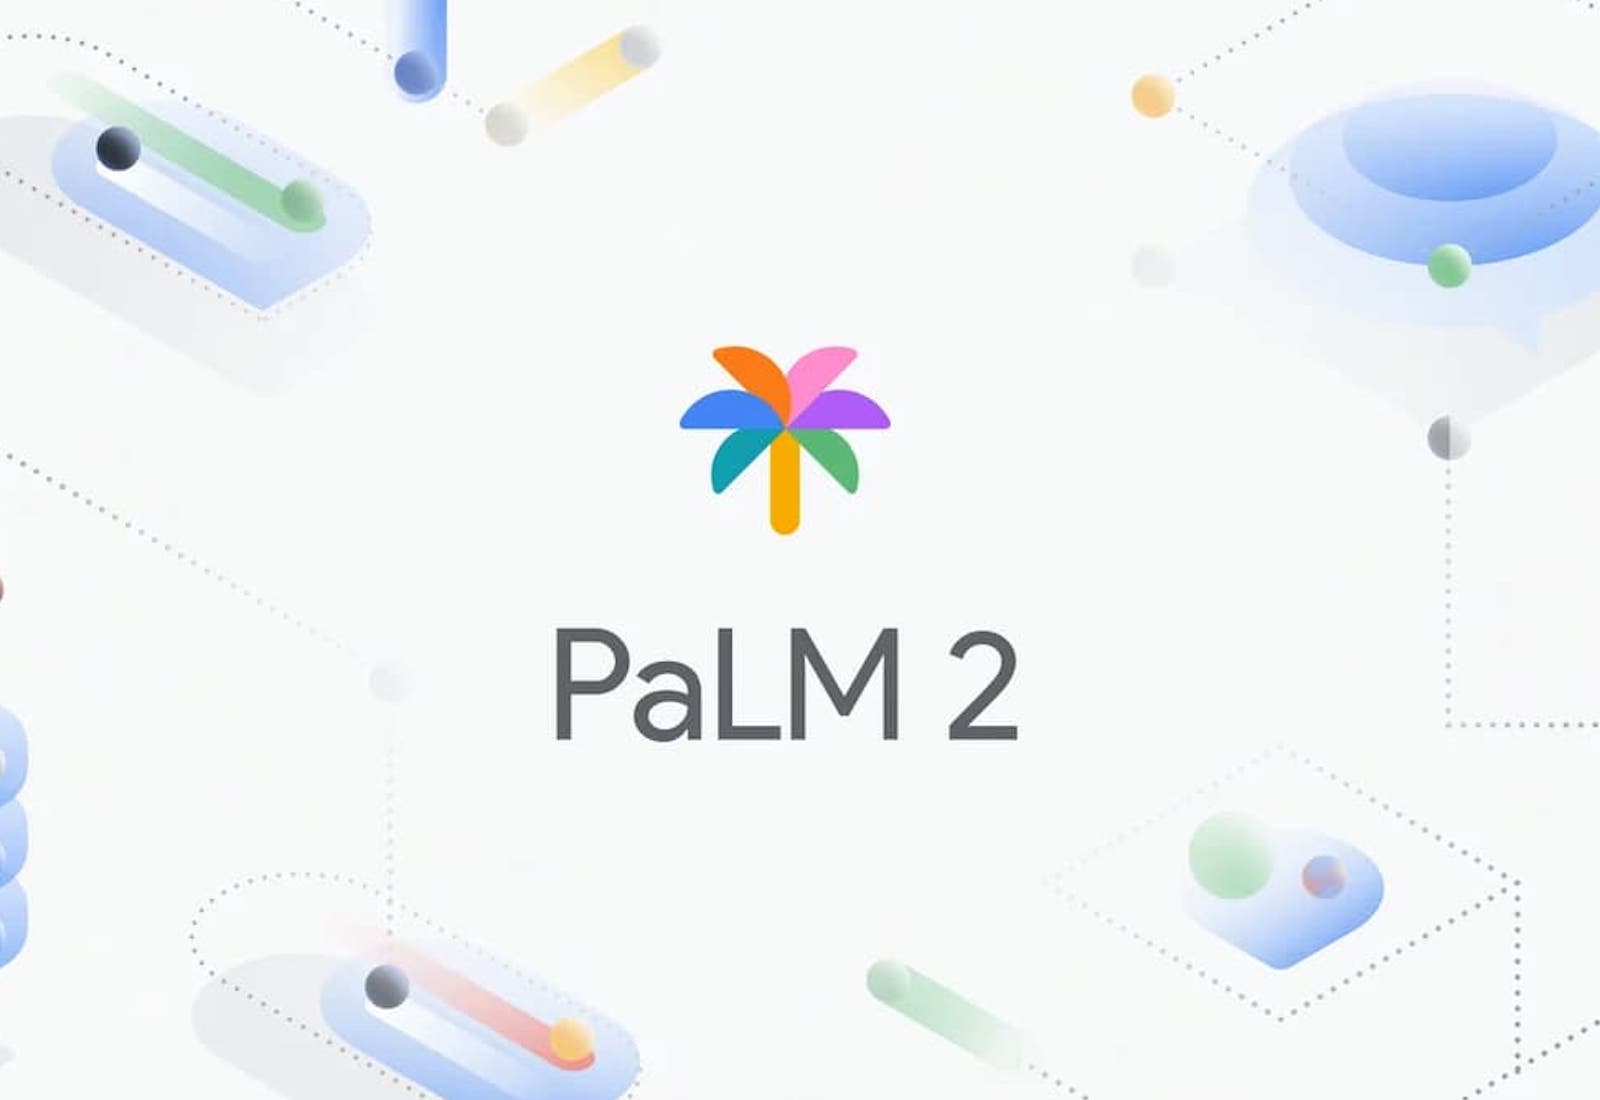 PaLM 2 la inteligencia artificial de Google -